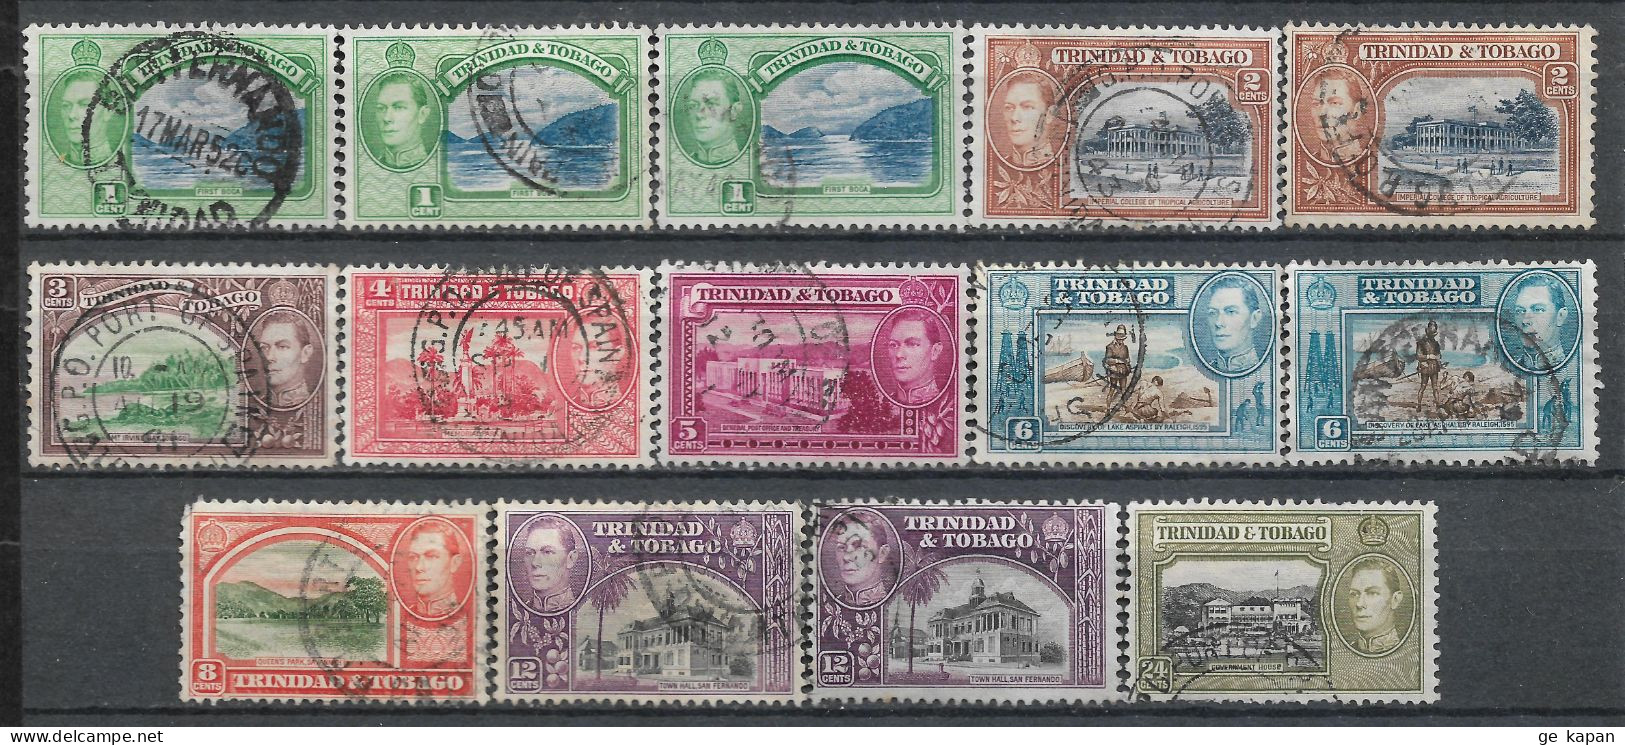 1938-1944 TRINIDAD & TOBAGO SET OF 14 USED STAMPS (Michel # 131,132,134,136-139,140a,140b,141) CV €5.90 - Trinidad En Tobago (...-1961)